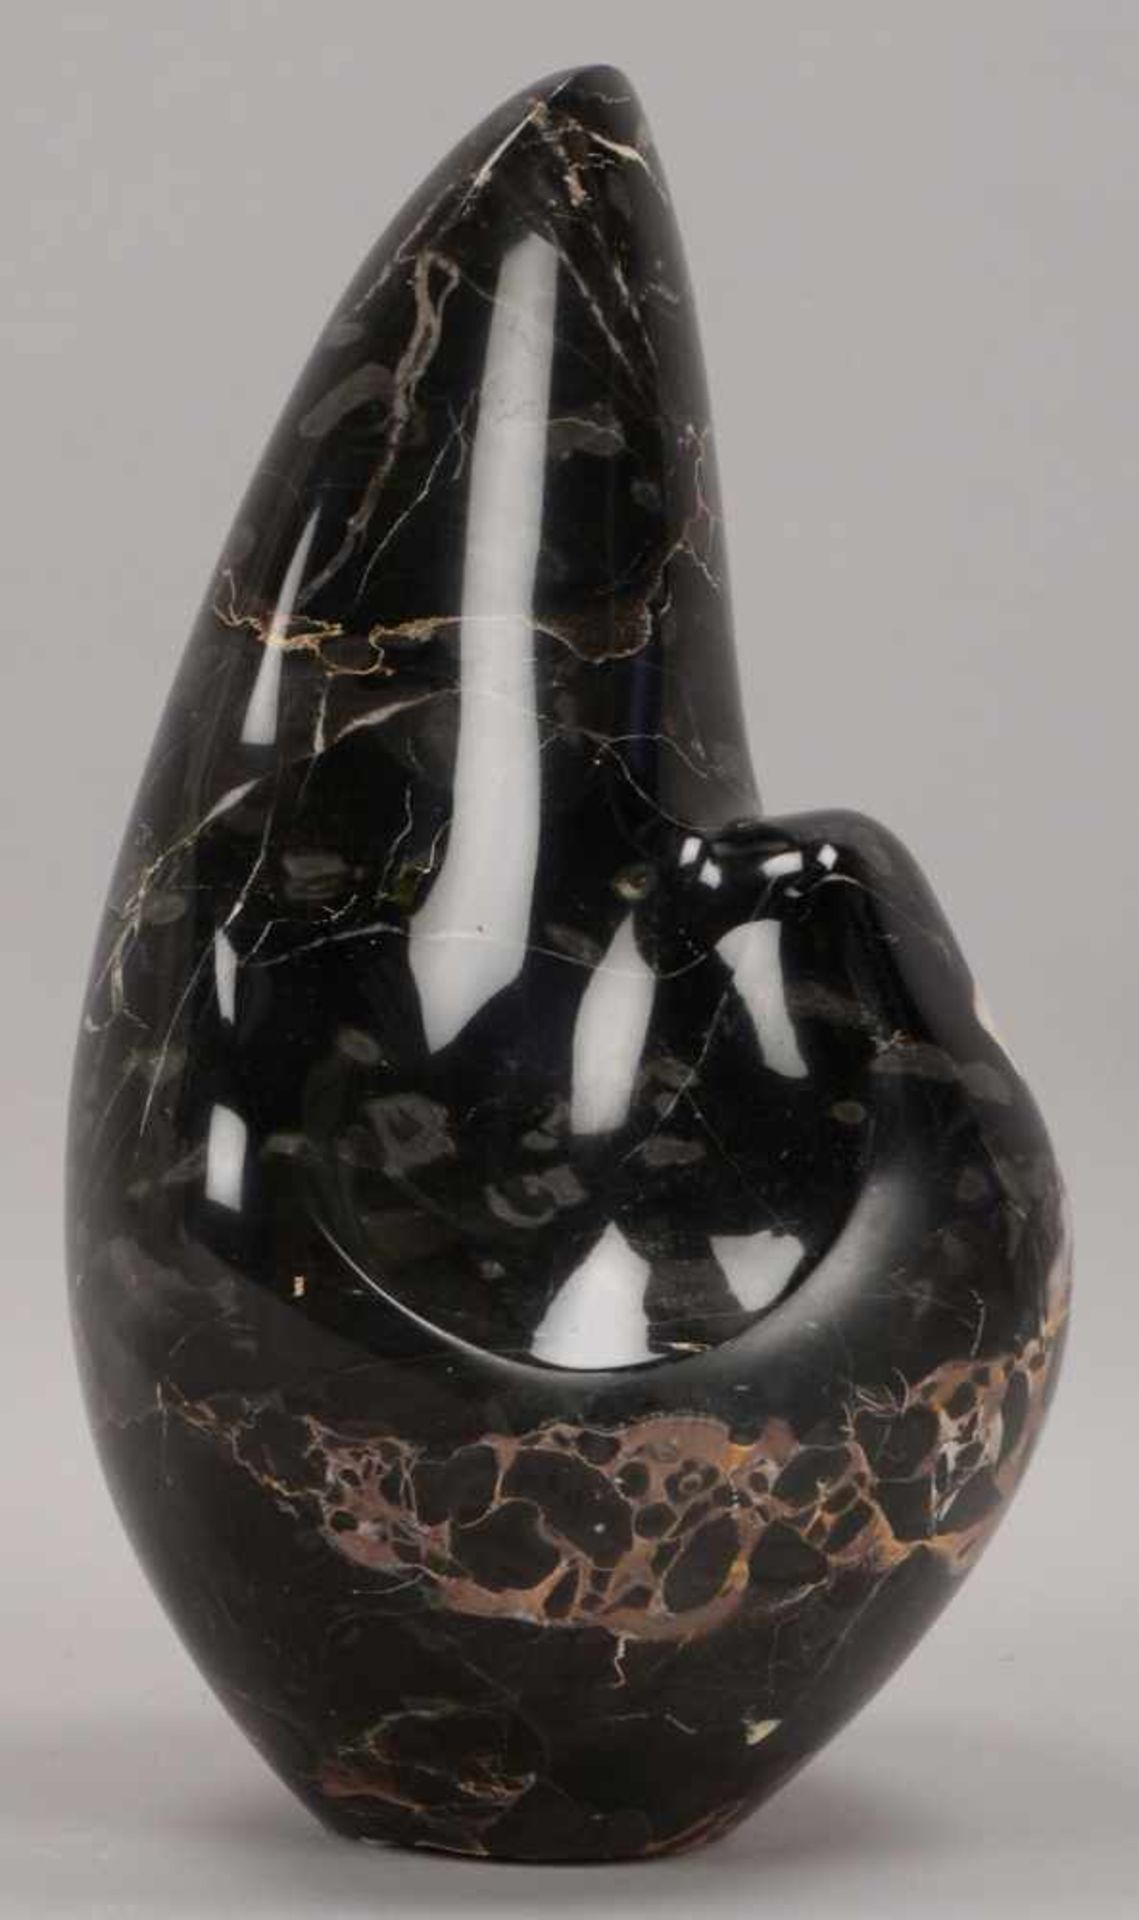 Schumann, Pierre (1917 - 2011), Skulptur, 'Mutter und Kind', schwarzer Marmor, signiert; Höhe 40 cm - Bild 2 aus 3